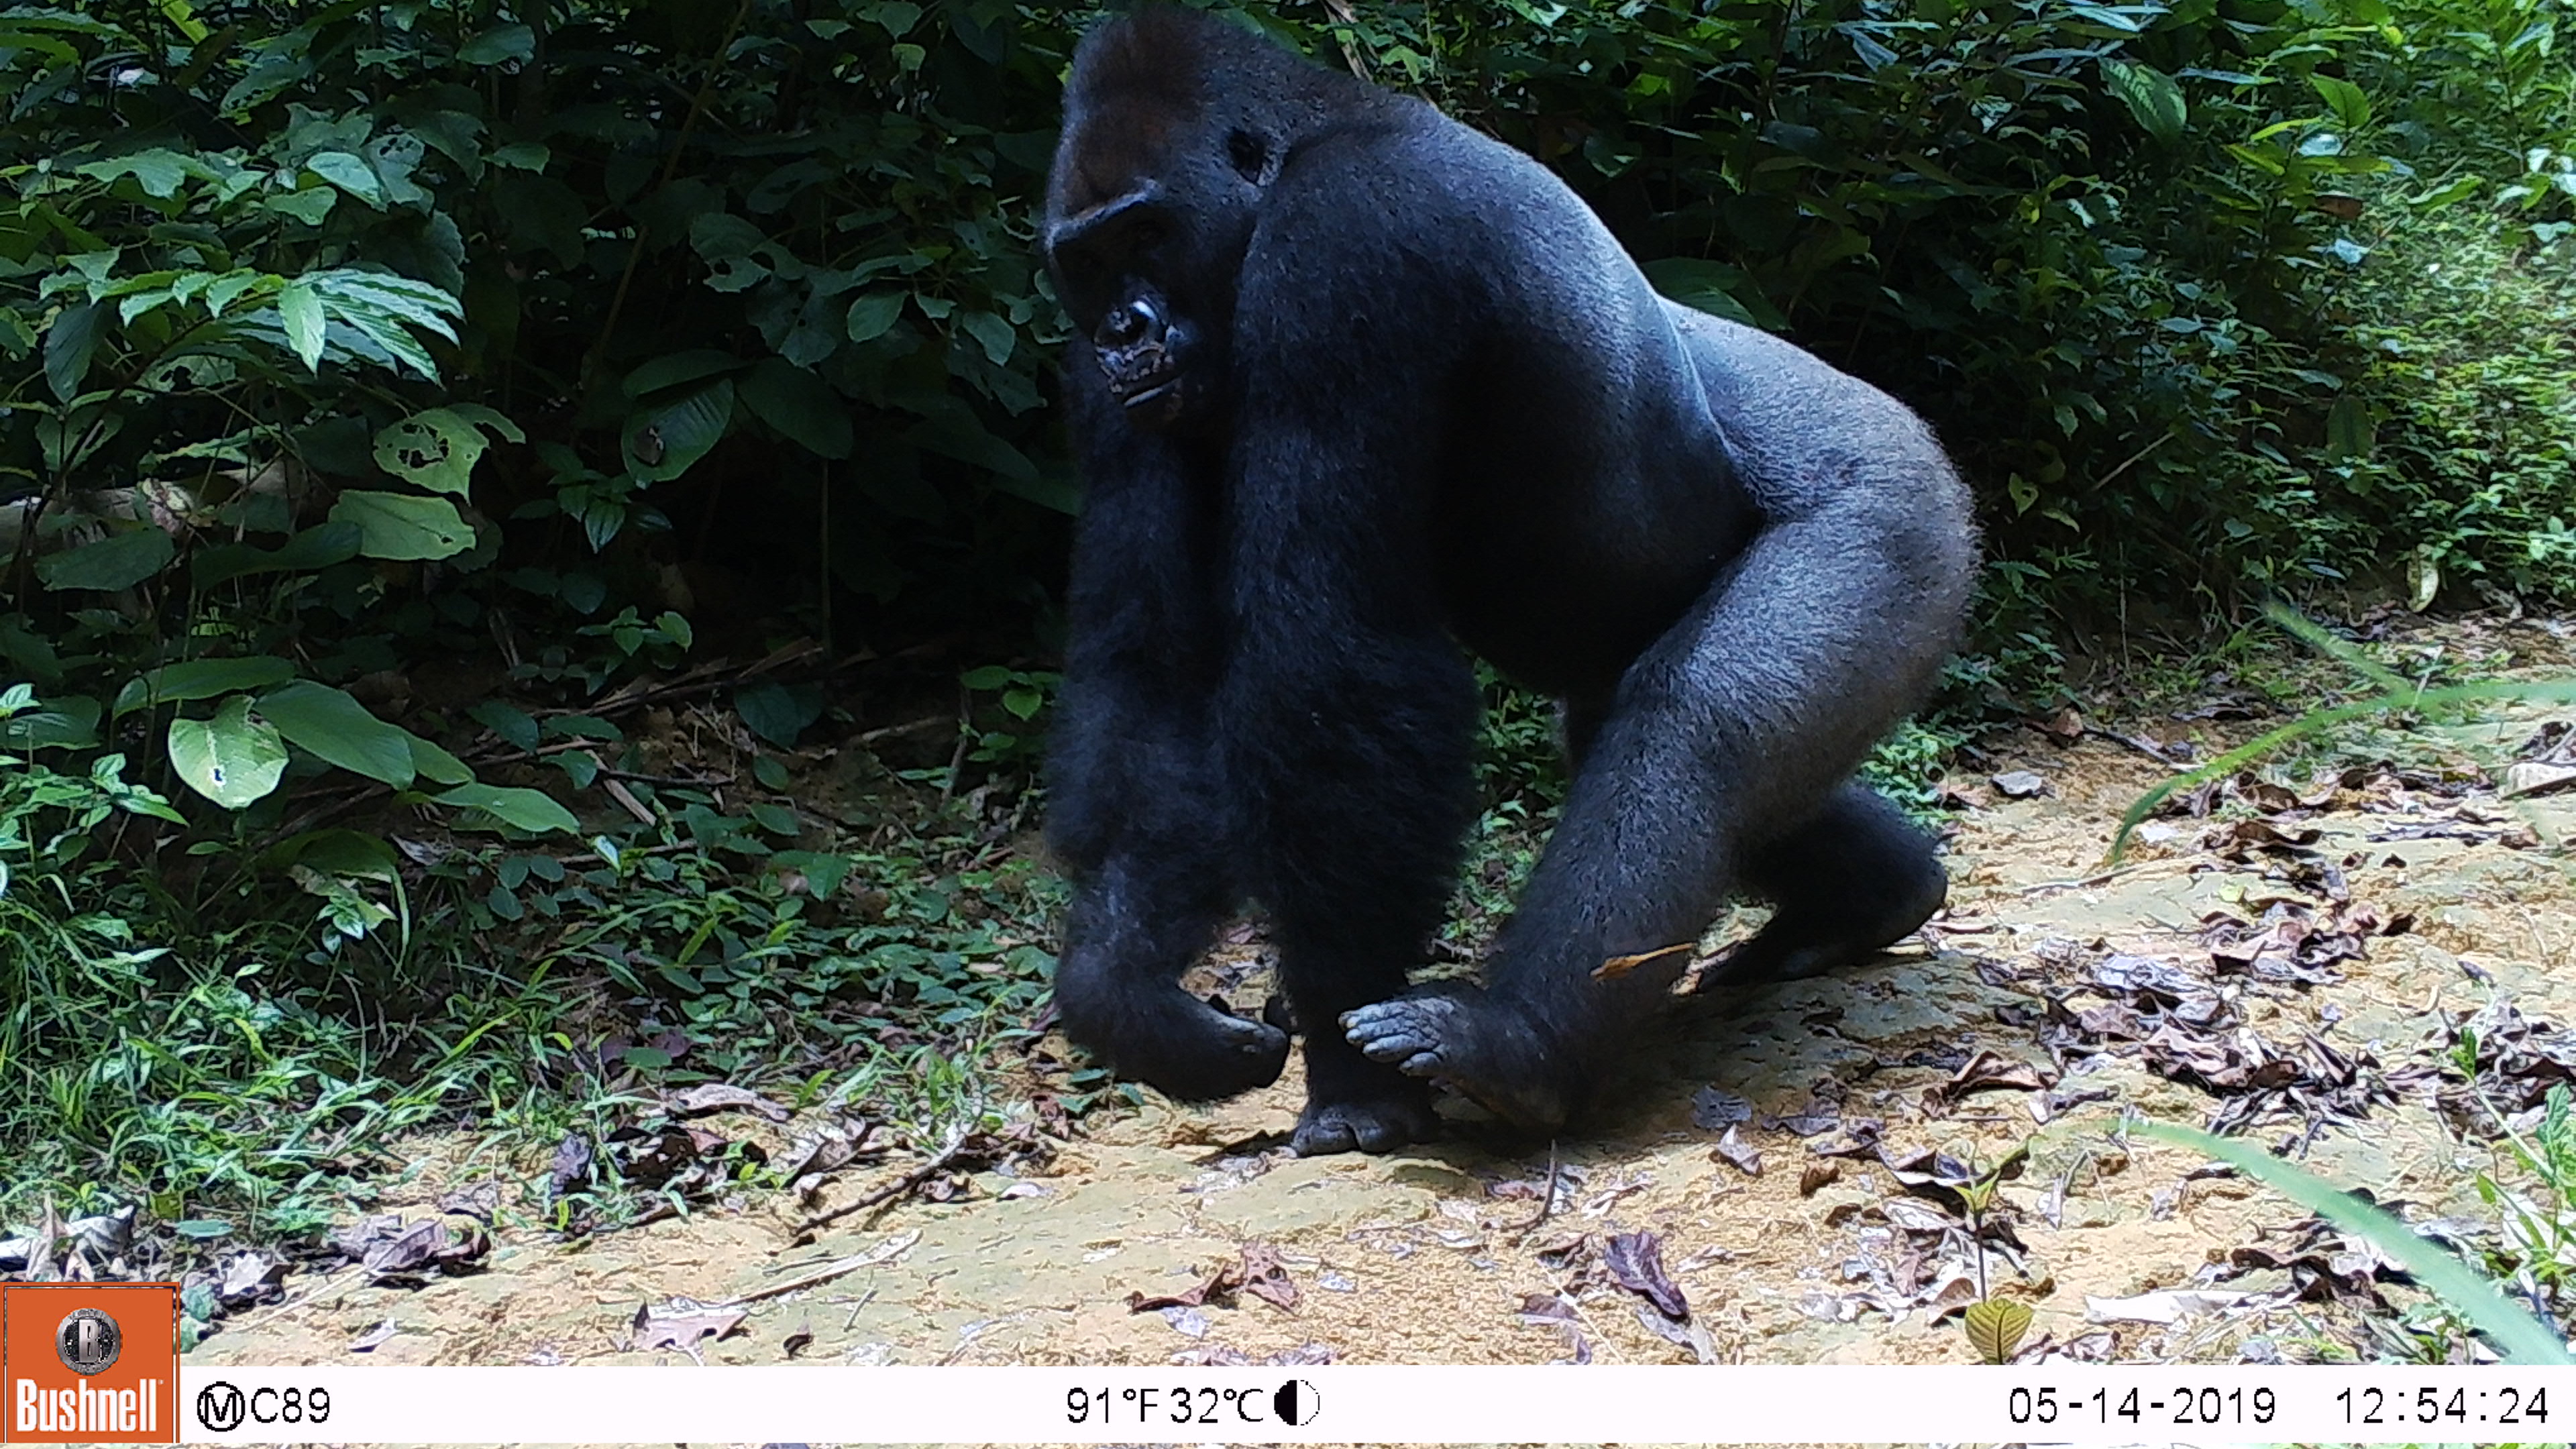 camera trap image of gorilla